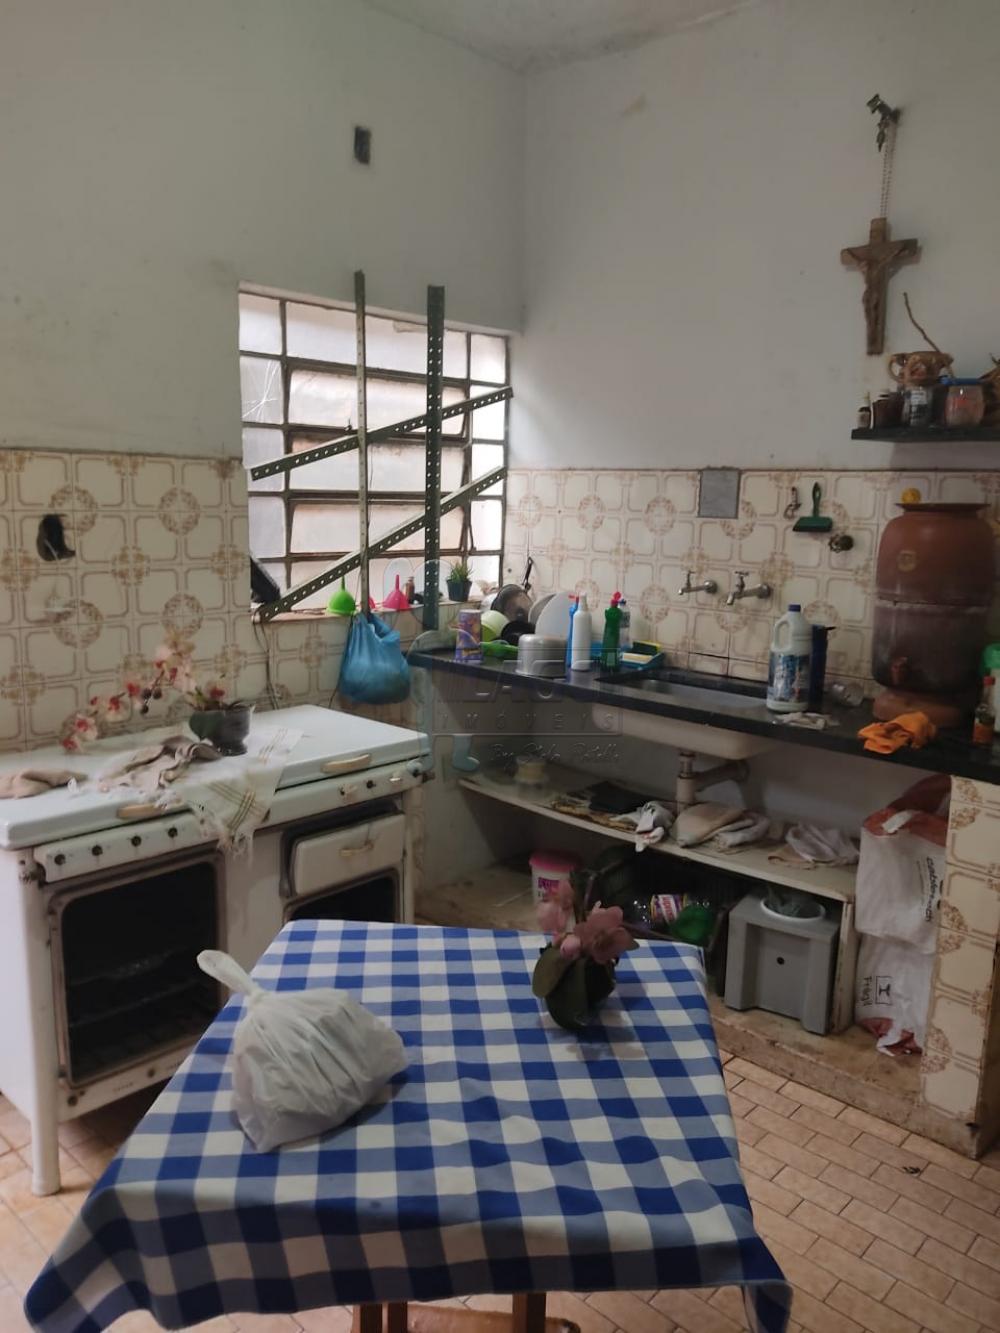 Comprar Casa / Padrão em Ribeirão Preto R$ 630.000,00 - Foto 3